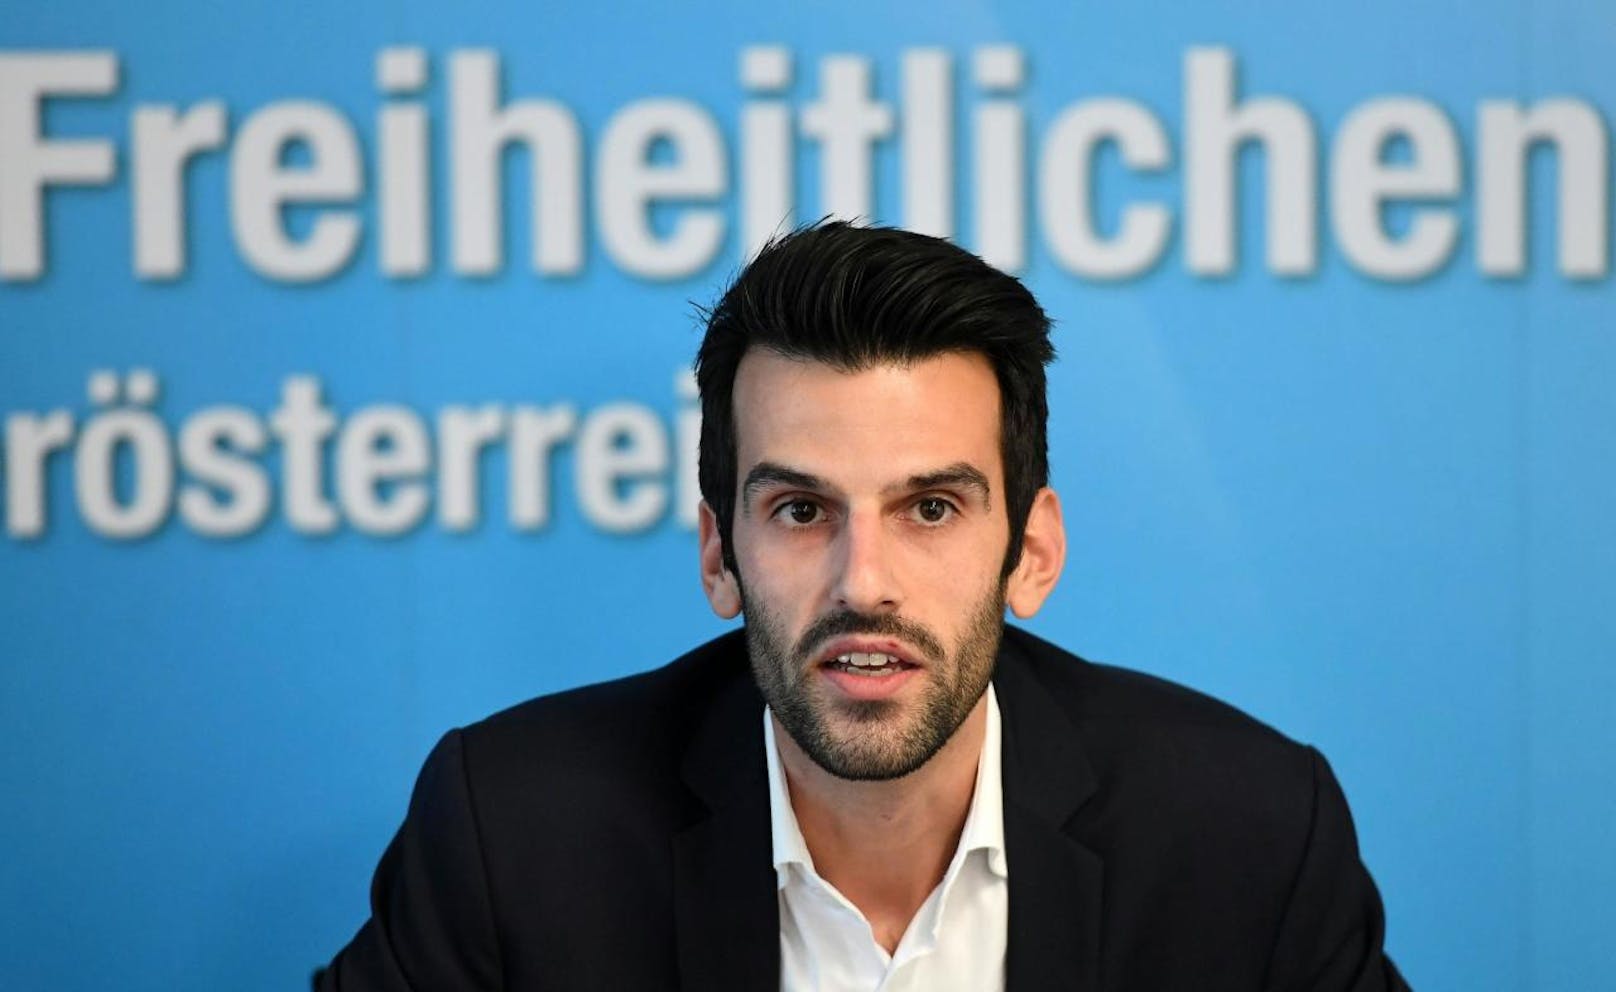 Gegen den freiheitlichen Kandidat in Niederösterreich, Udo Landbauer, sind Vorwürfe im Zusammenhang mit nationalsozialistischem Liedergut laut geworden.